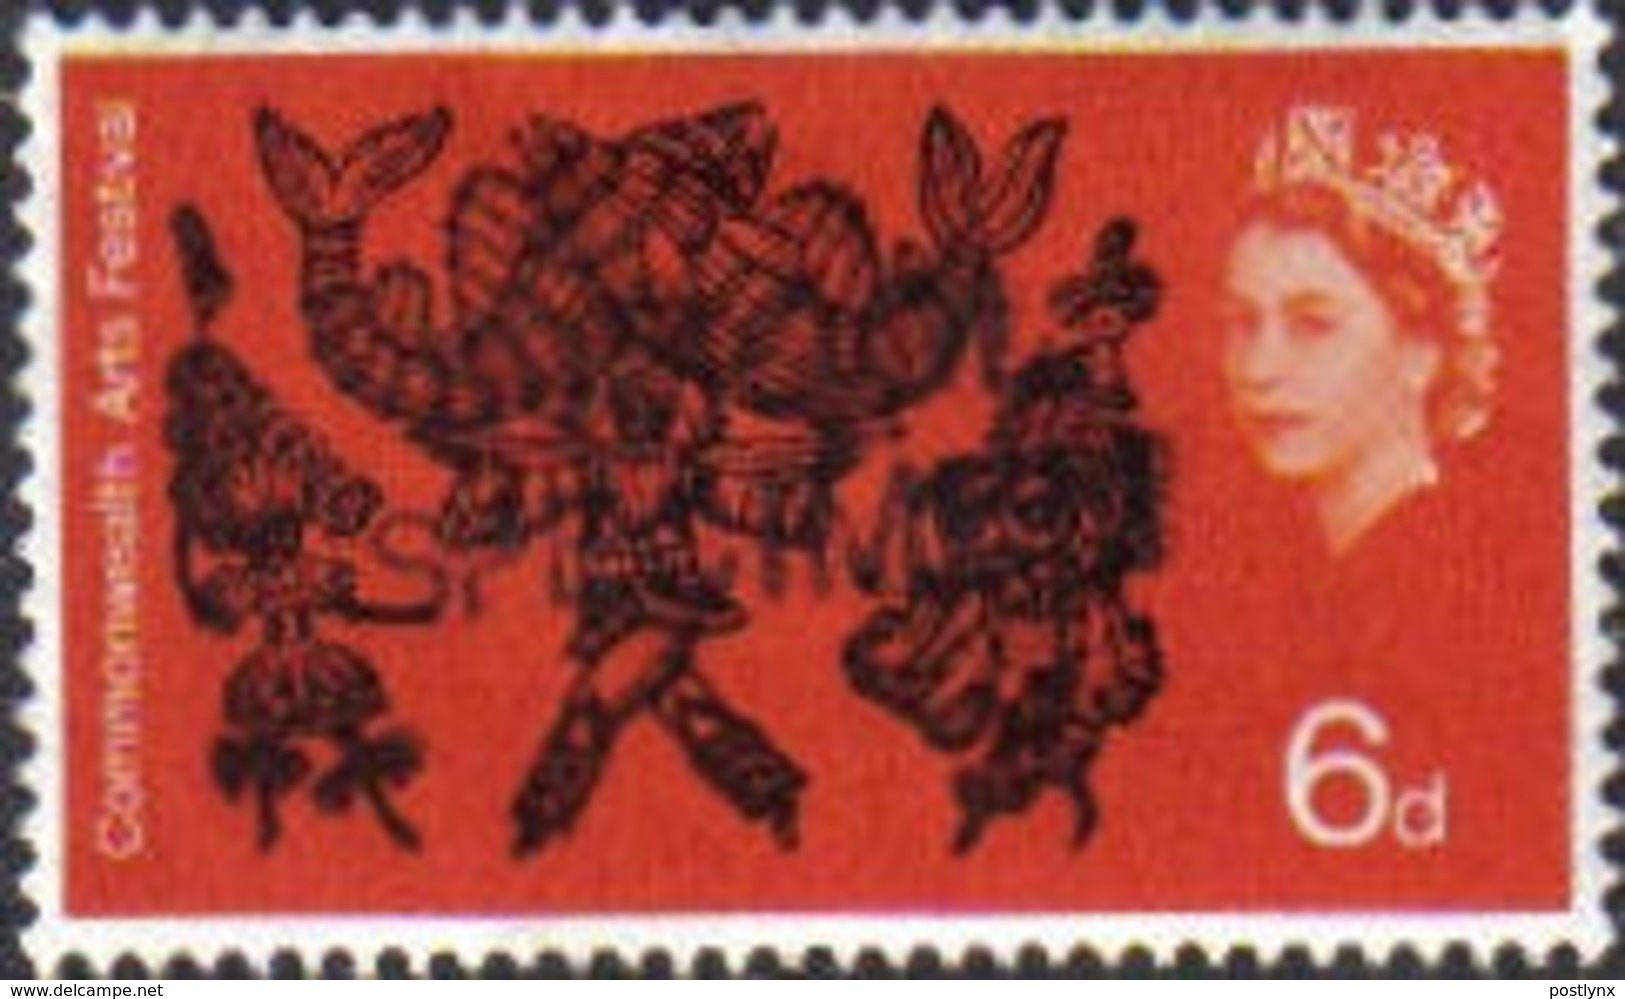 GREAT BRITAIN 1965 Art Dancing 6d OVPT:SCHOOL SPECIMEN Post Office Traing Stamps [spécimen,Muster,muestra] - Ficción & Especimenes